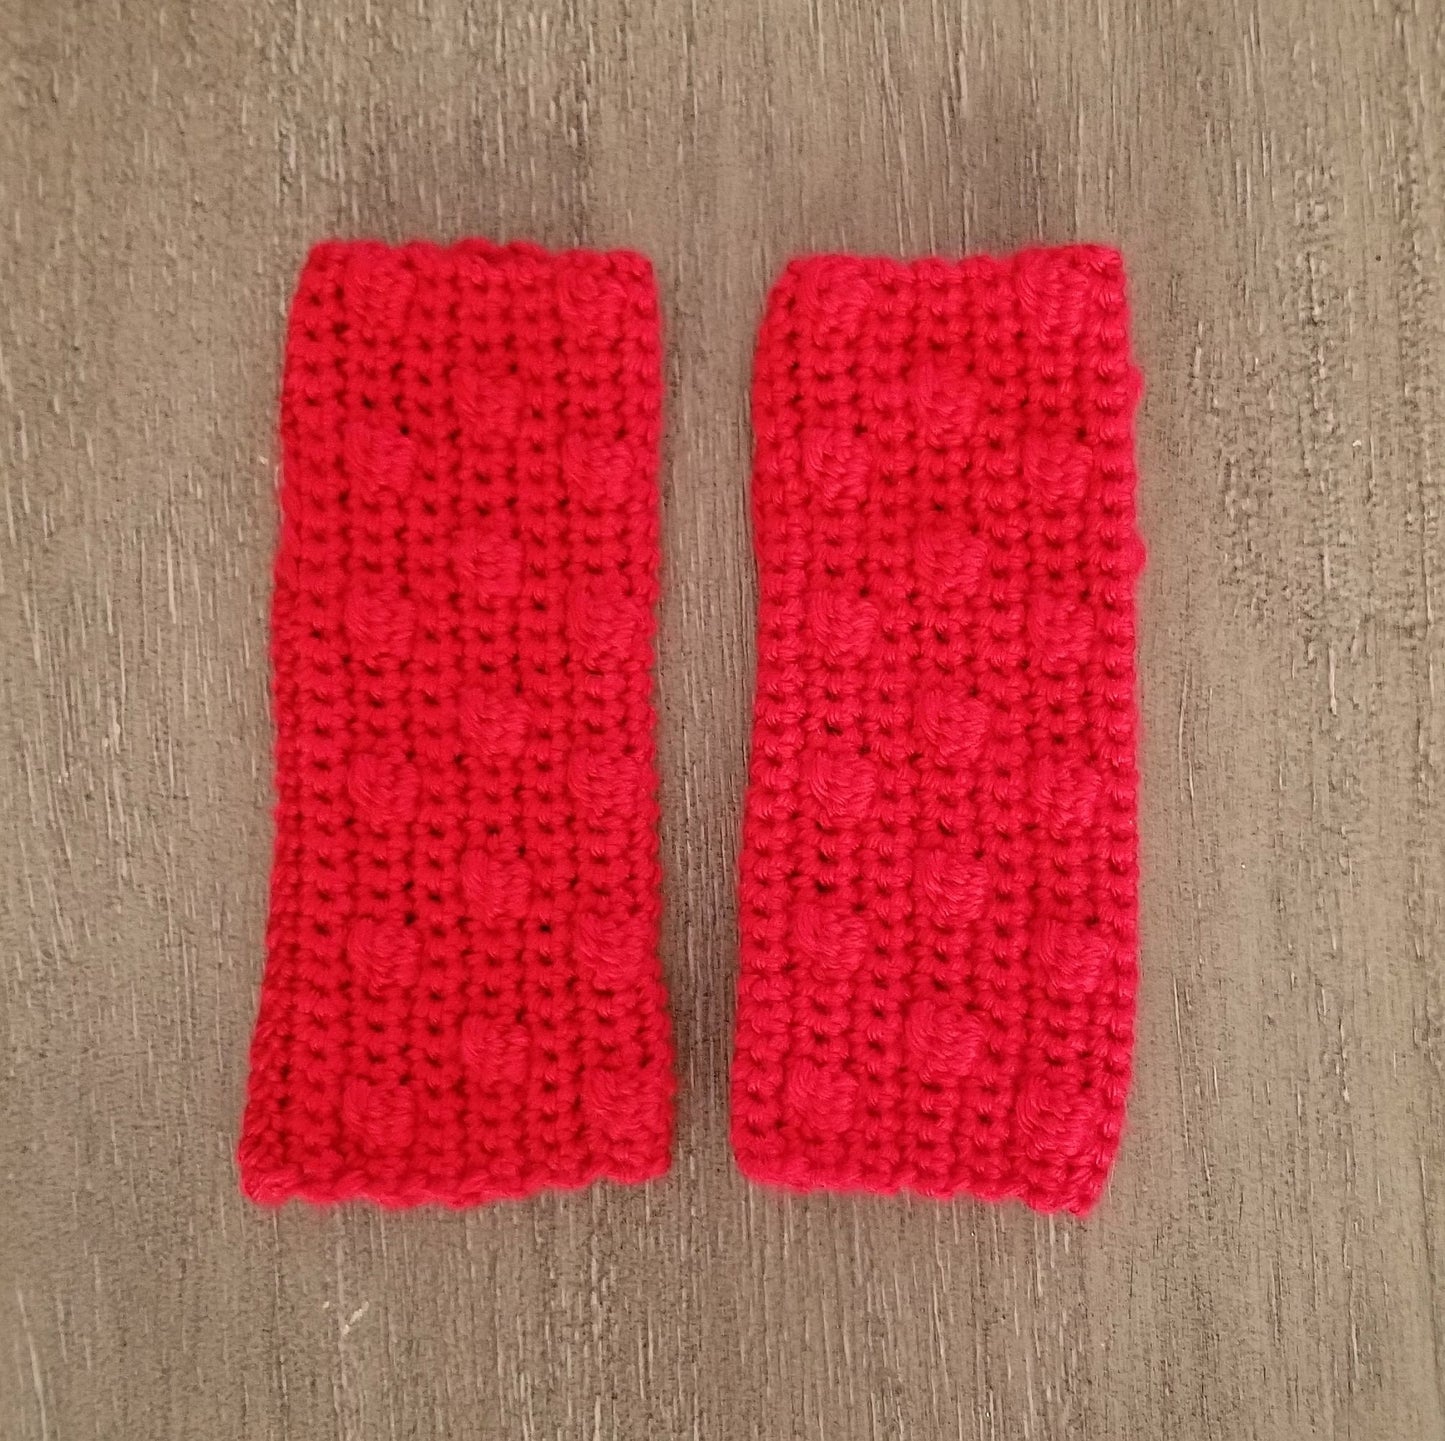 Bobble Fingerless Gloves Crochet Pattern, PDF Digital Download